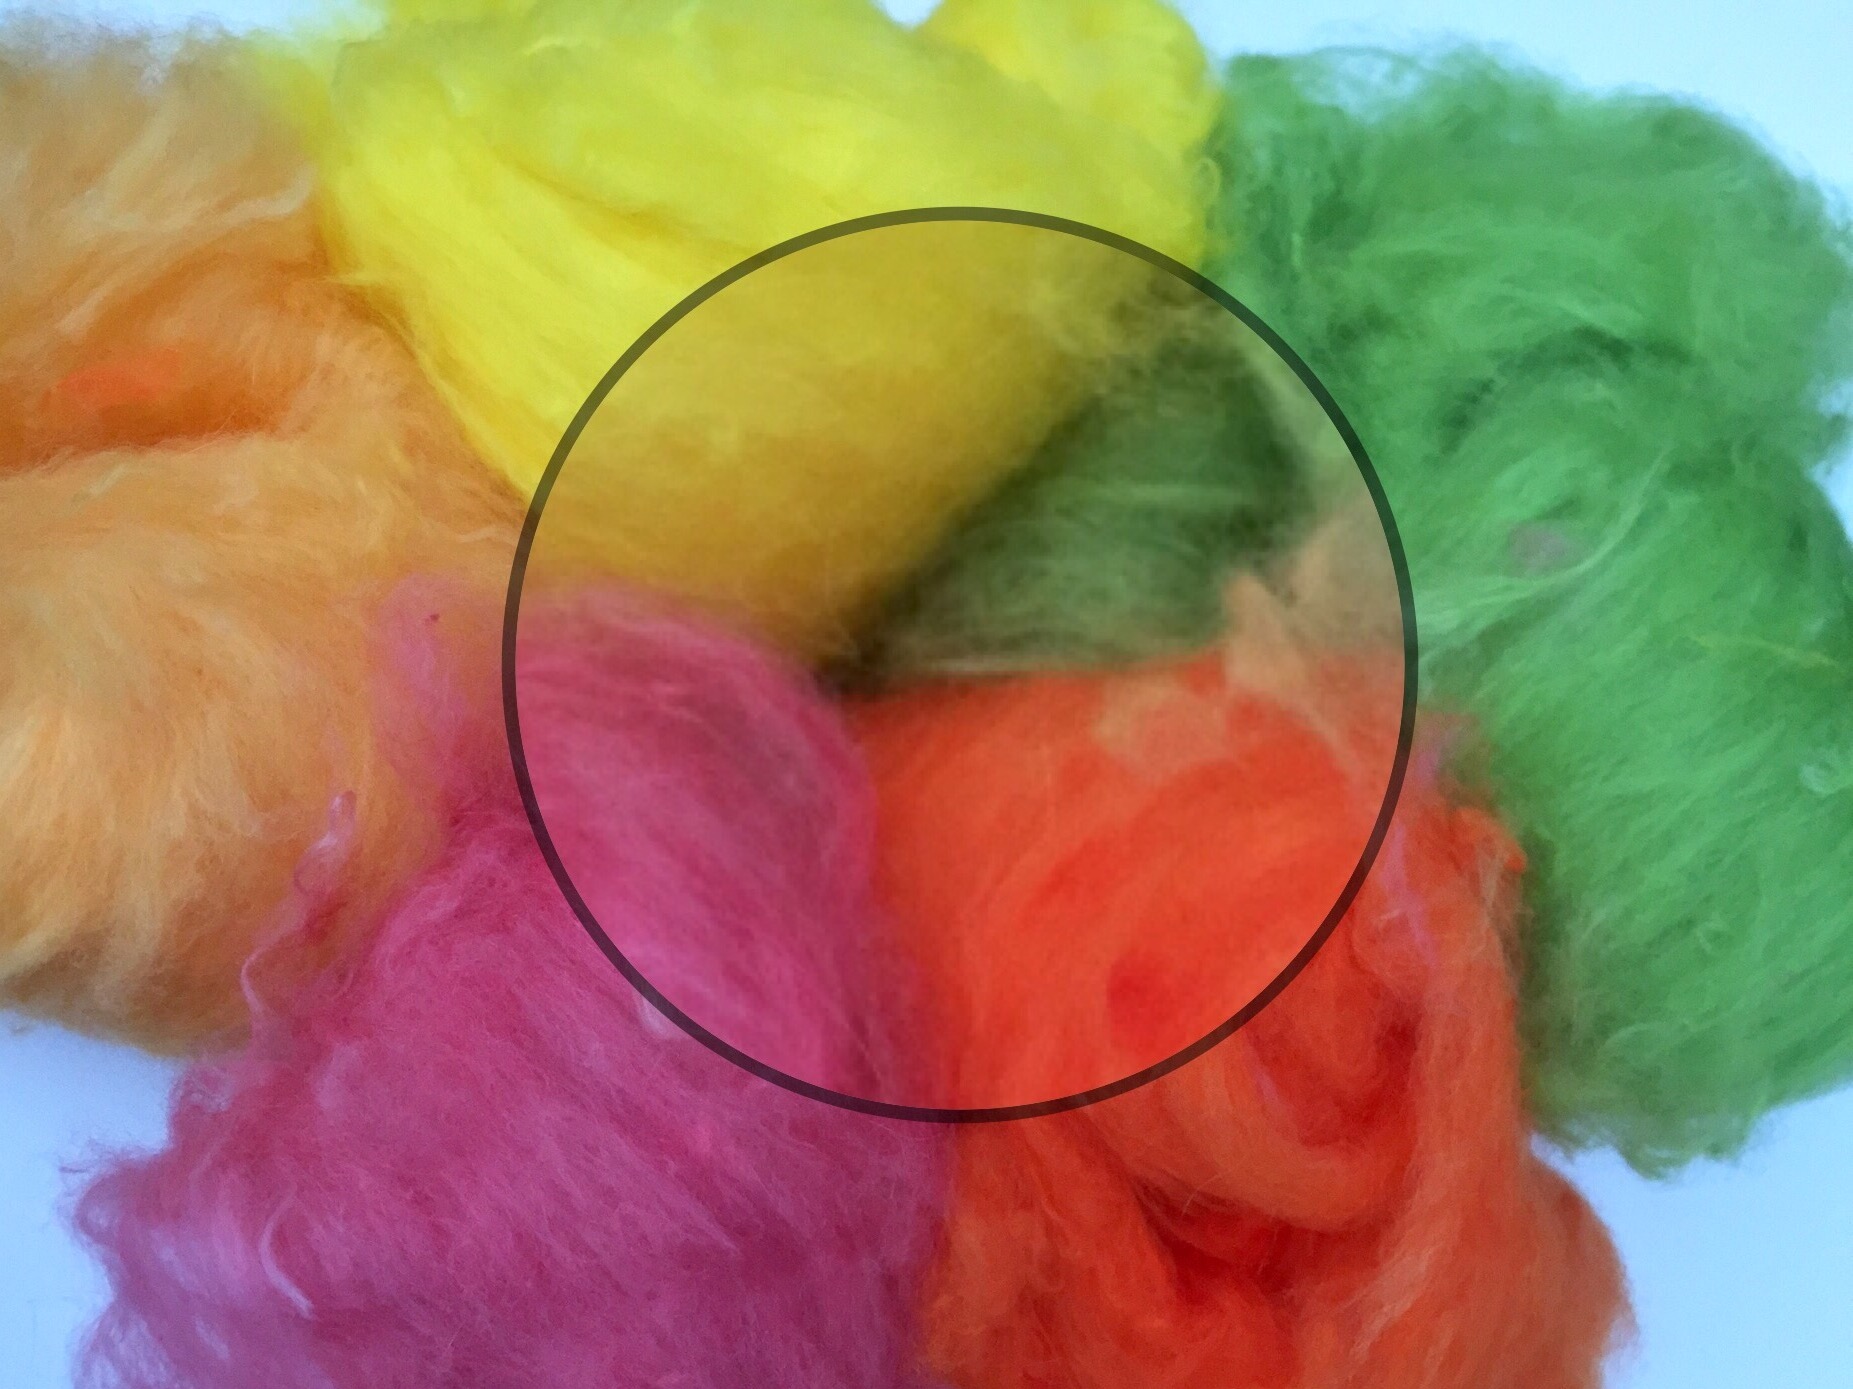 Как покрасить шерстяную пряжу краской для волос